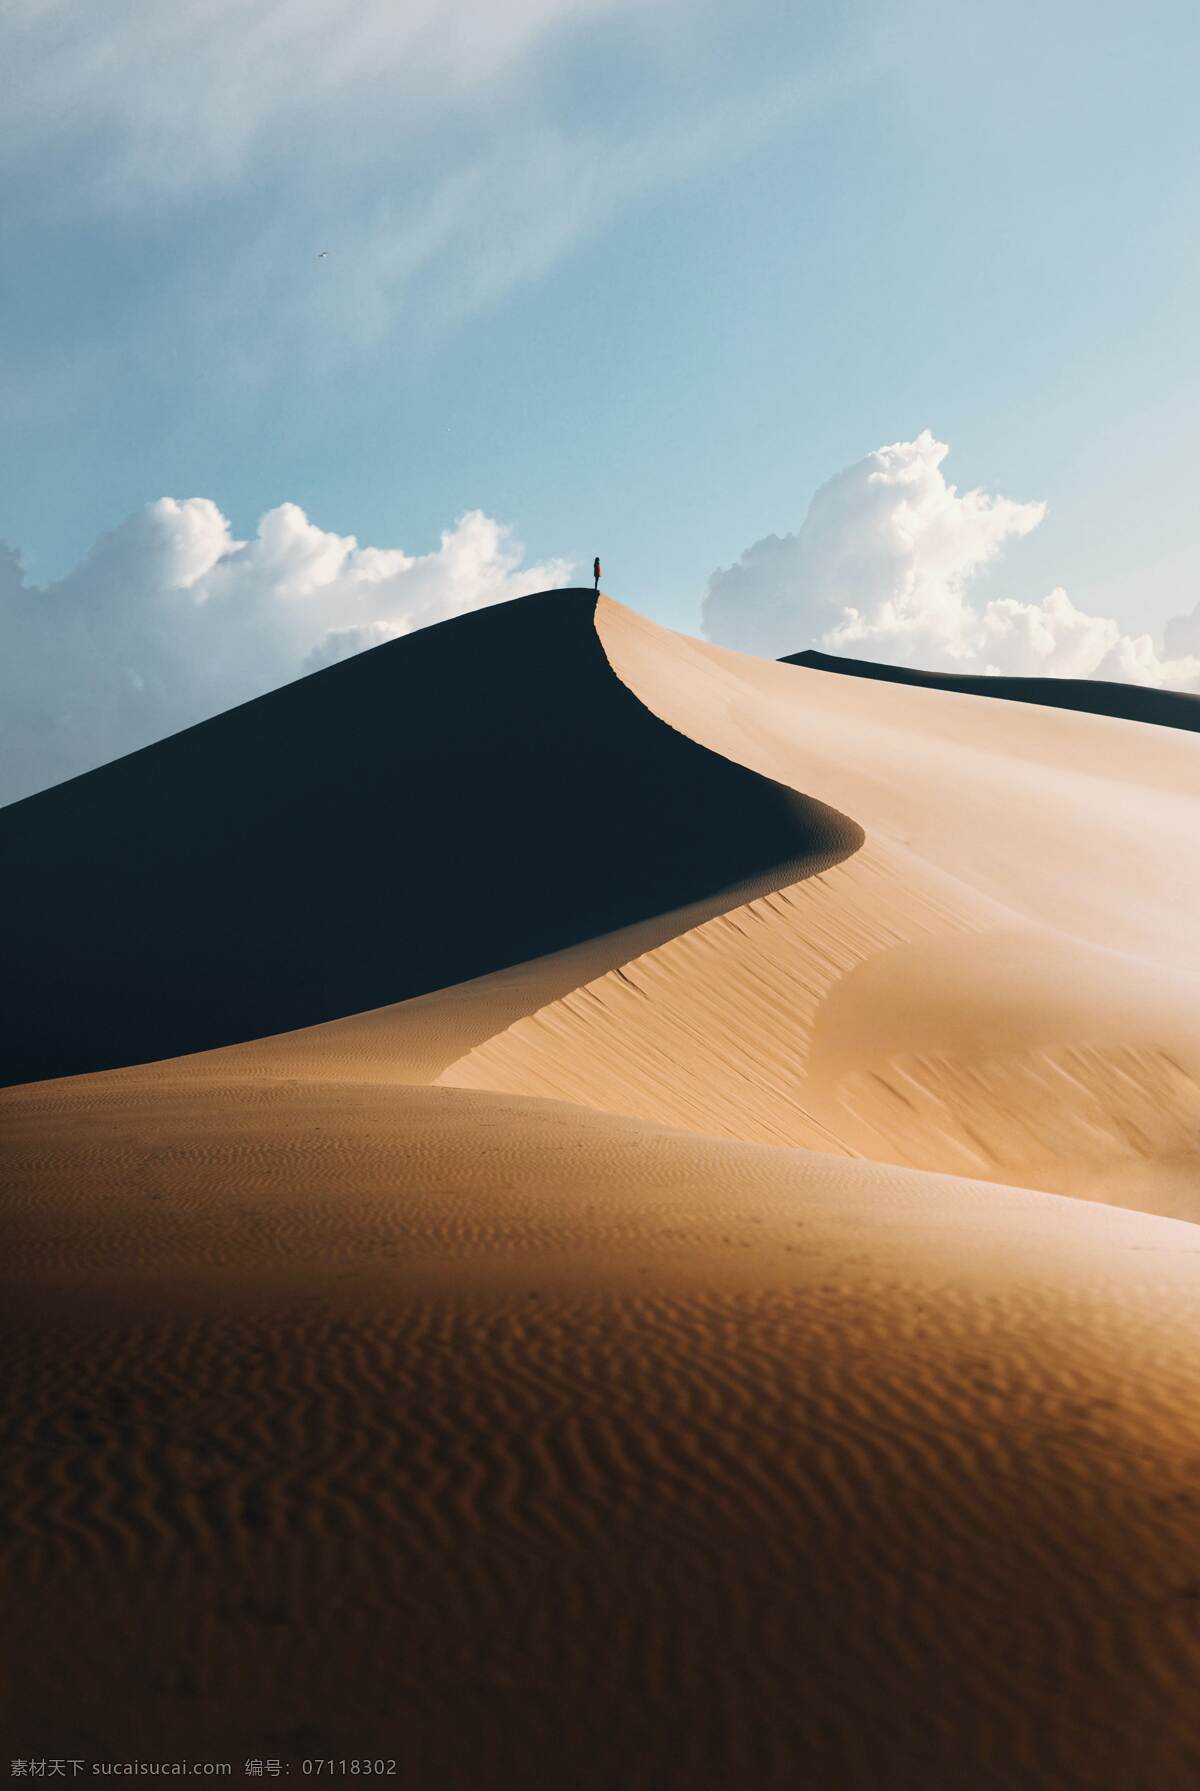 沙漠沙峰自然 沙漠 沙丘 沙峰 沙子 荒漠 自然 景观 户外 旅行 鸣沙山 背景 沙漠风光 沙漠景观 图库陆地自然 自然景观 自然风景